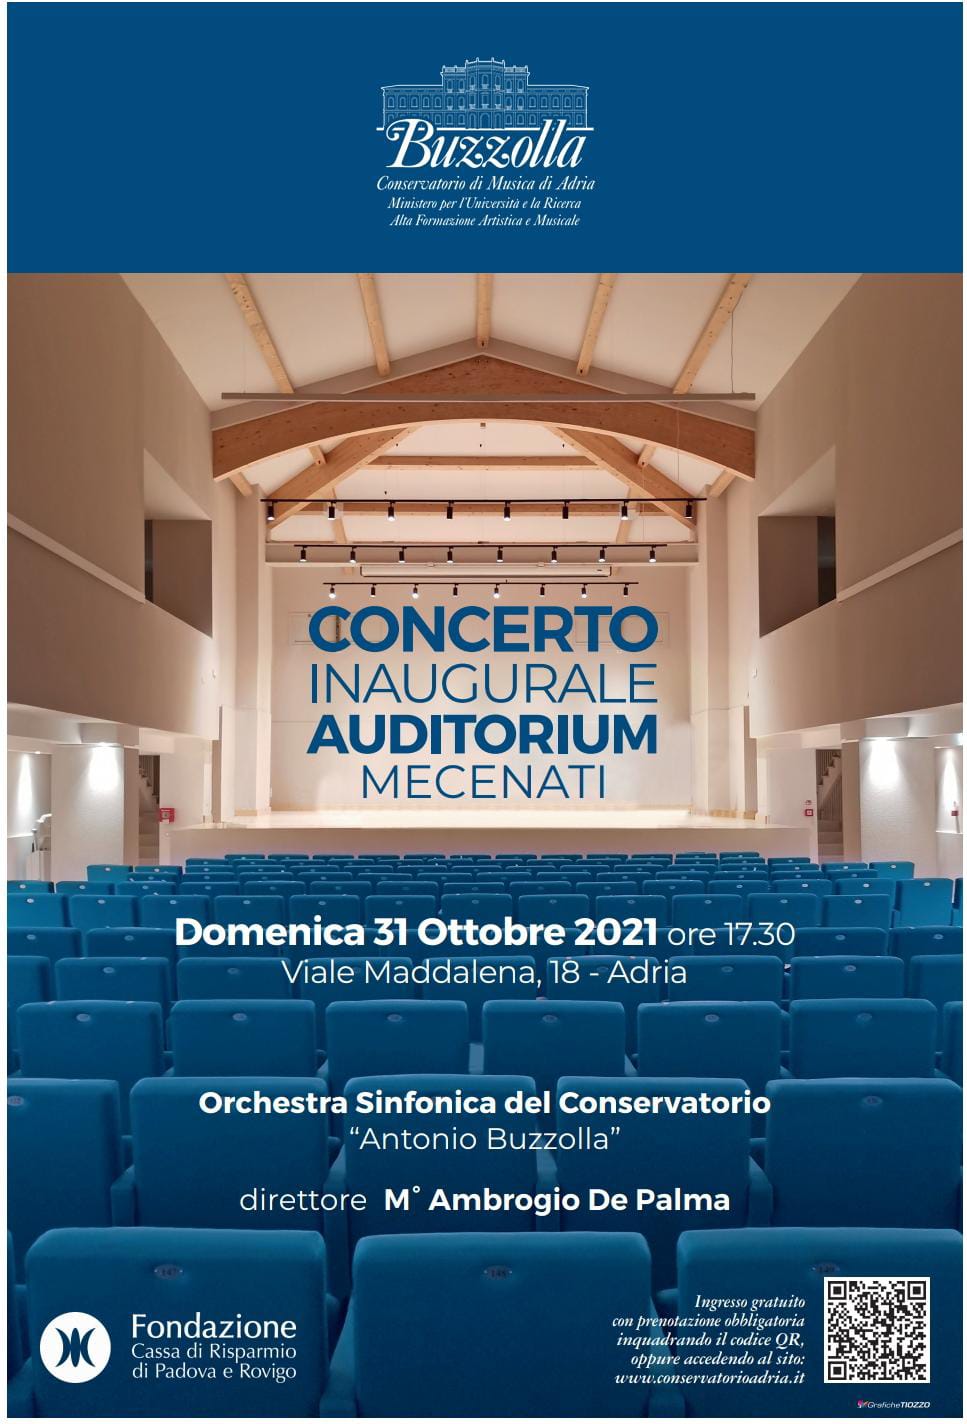 Concerto inaugurale auditorium – domenica 31 ottobre 2021